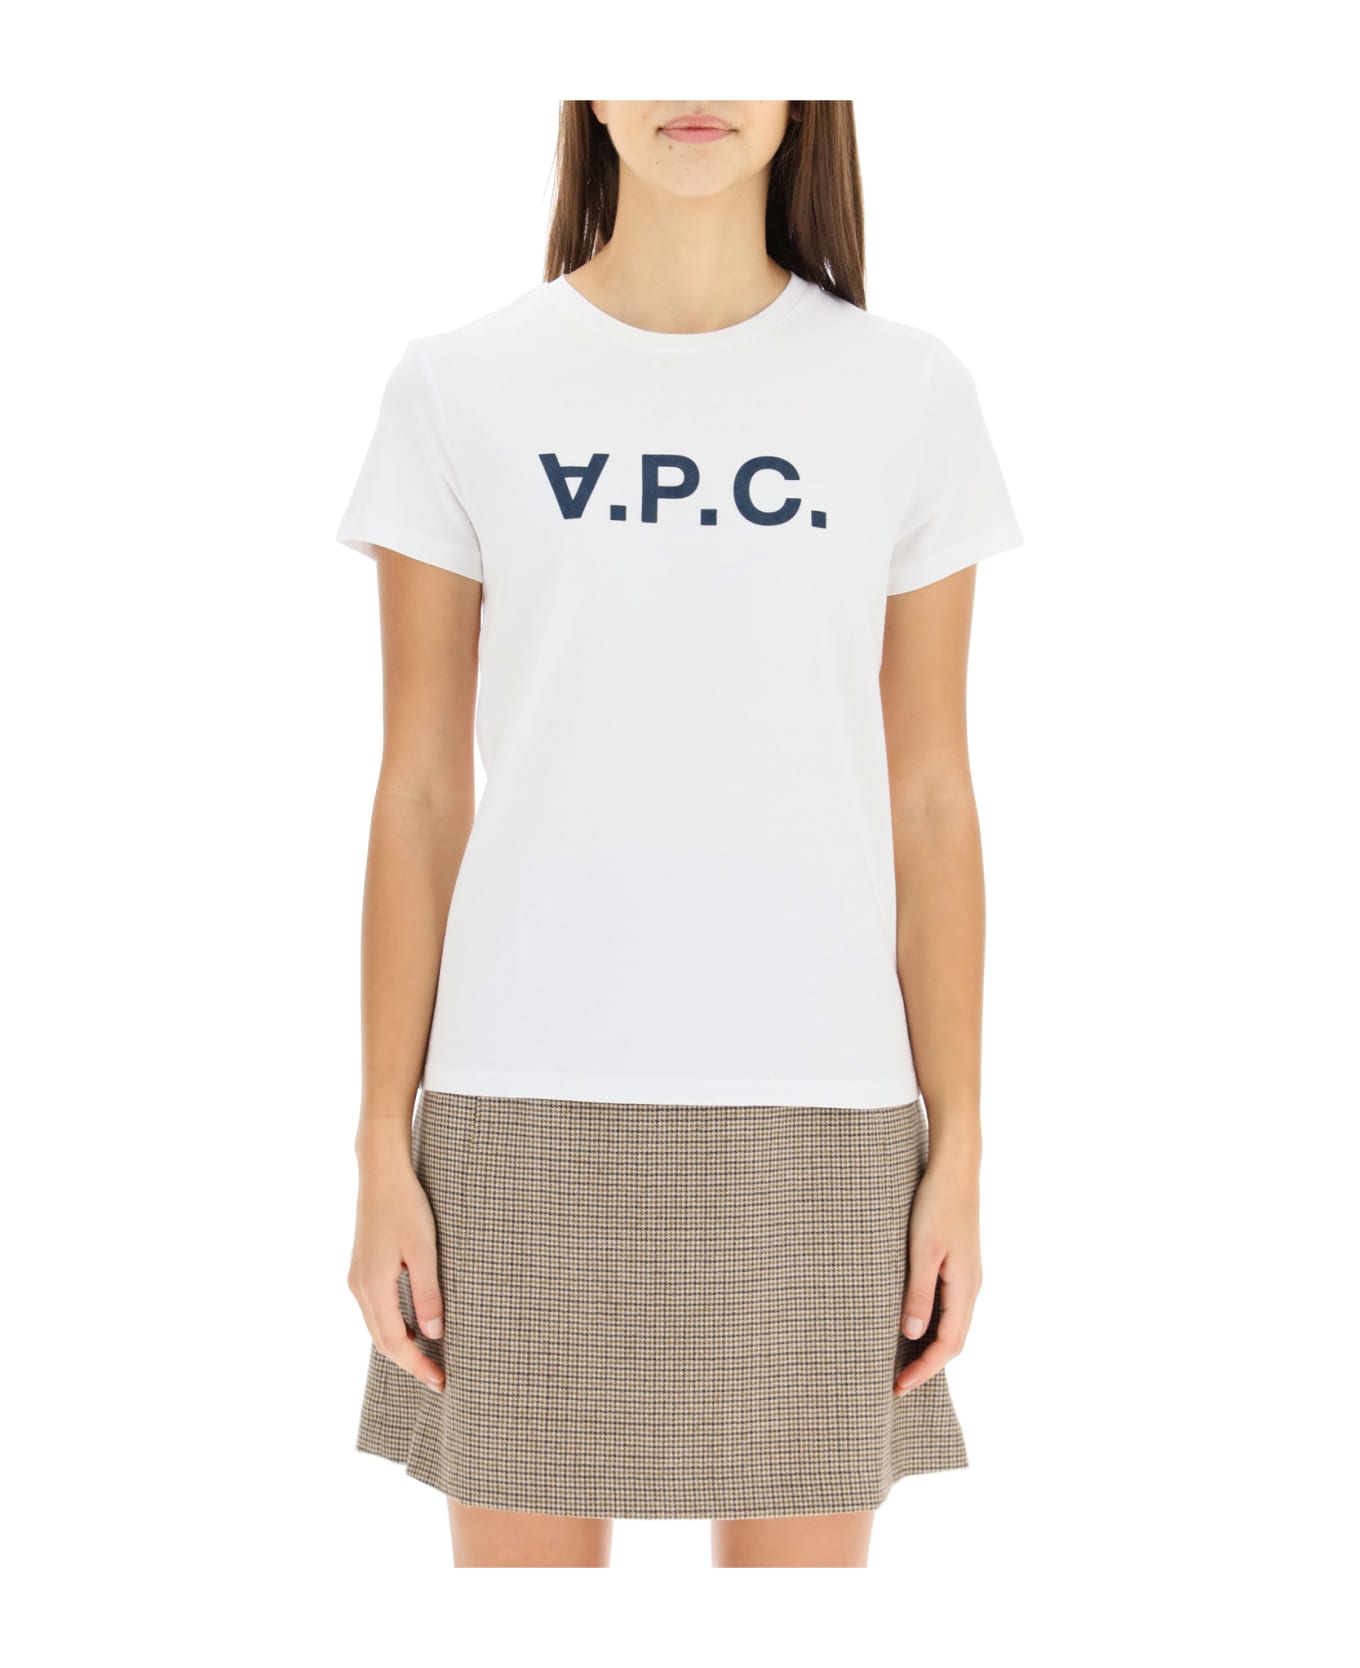 A.P.C. Logo T-shirt - White シャツ